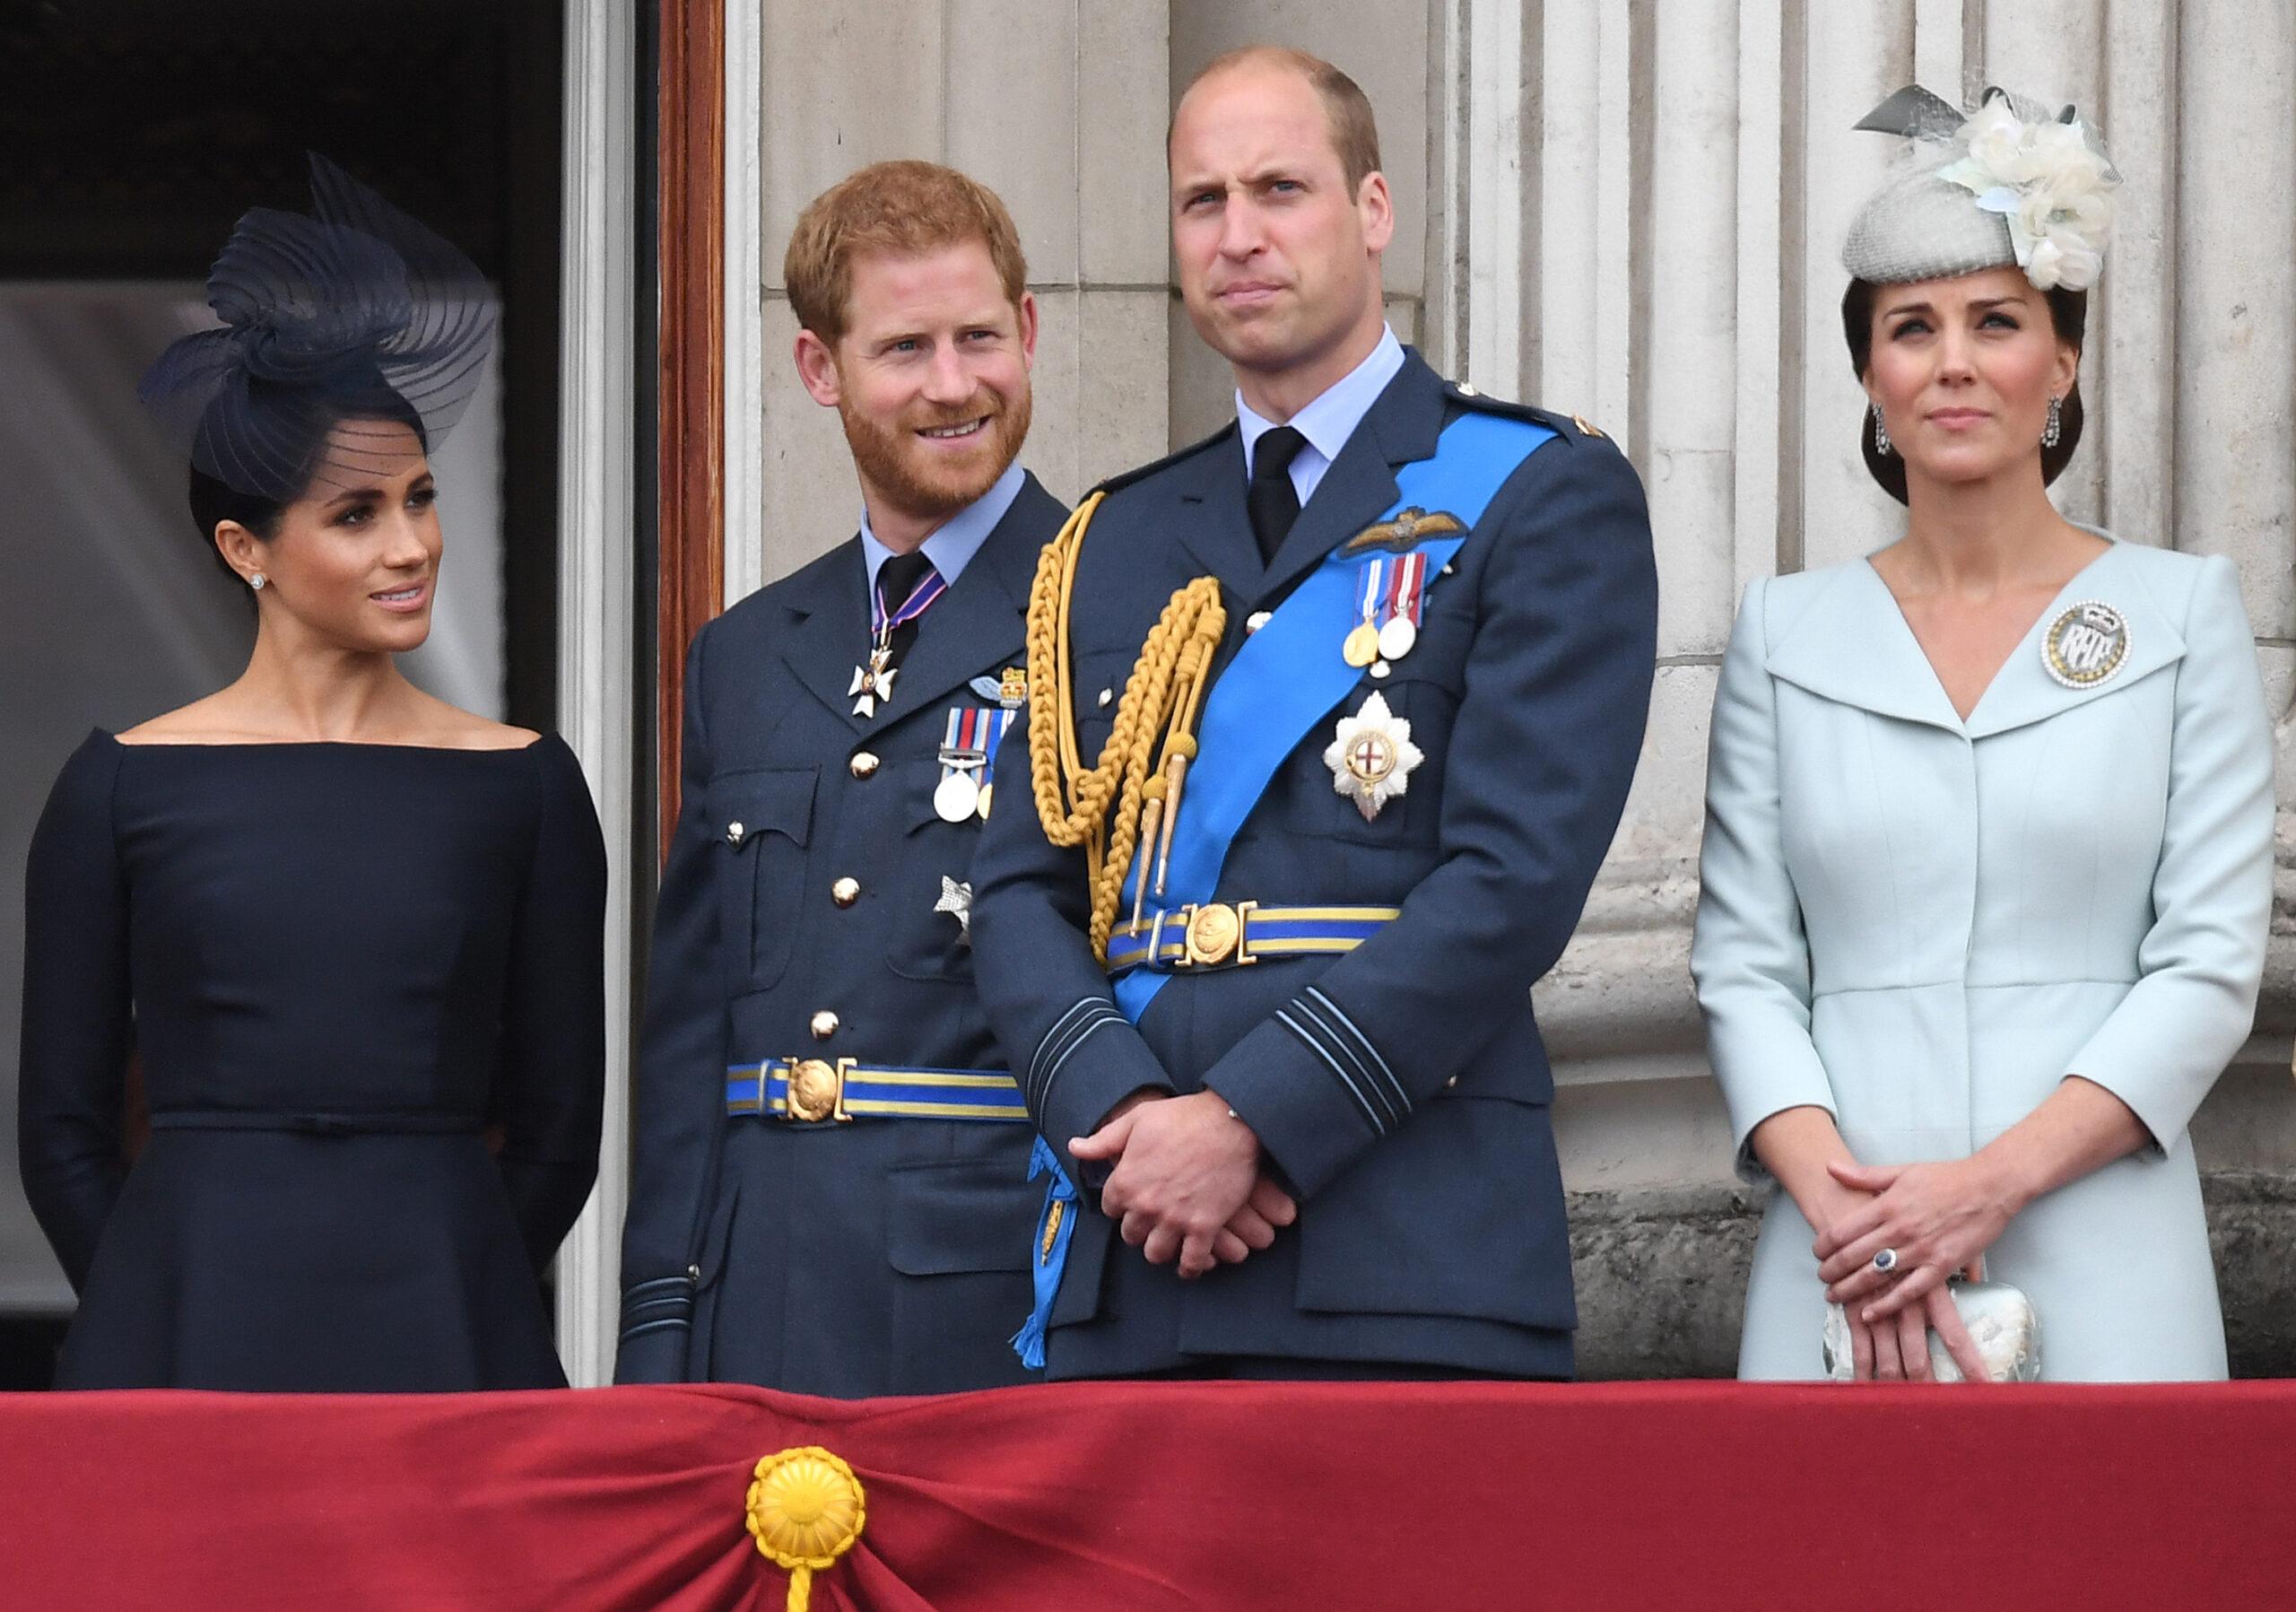 Meghan Markle, Duquesa de Sussex, Príncipe Harry, Duque de Sussex, e o Duque e a Duquesa de Cambridge comparecem ao sobrevoo da RAF100 no Palácio de Buckingham, Londres, Reino Unido, em 10 de julho de 2018. 10 de julho de 2018